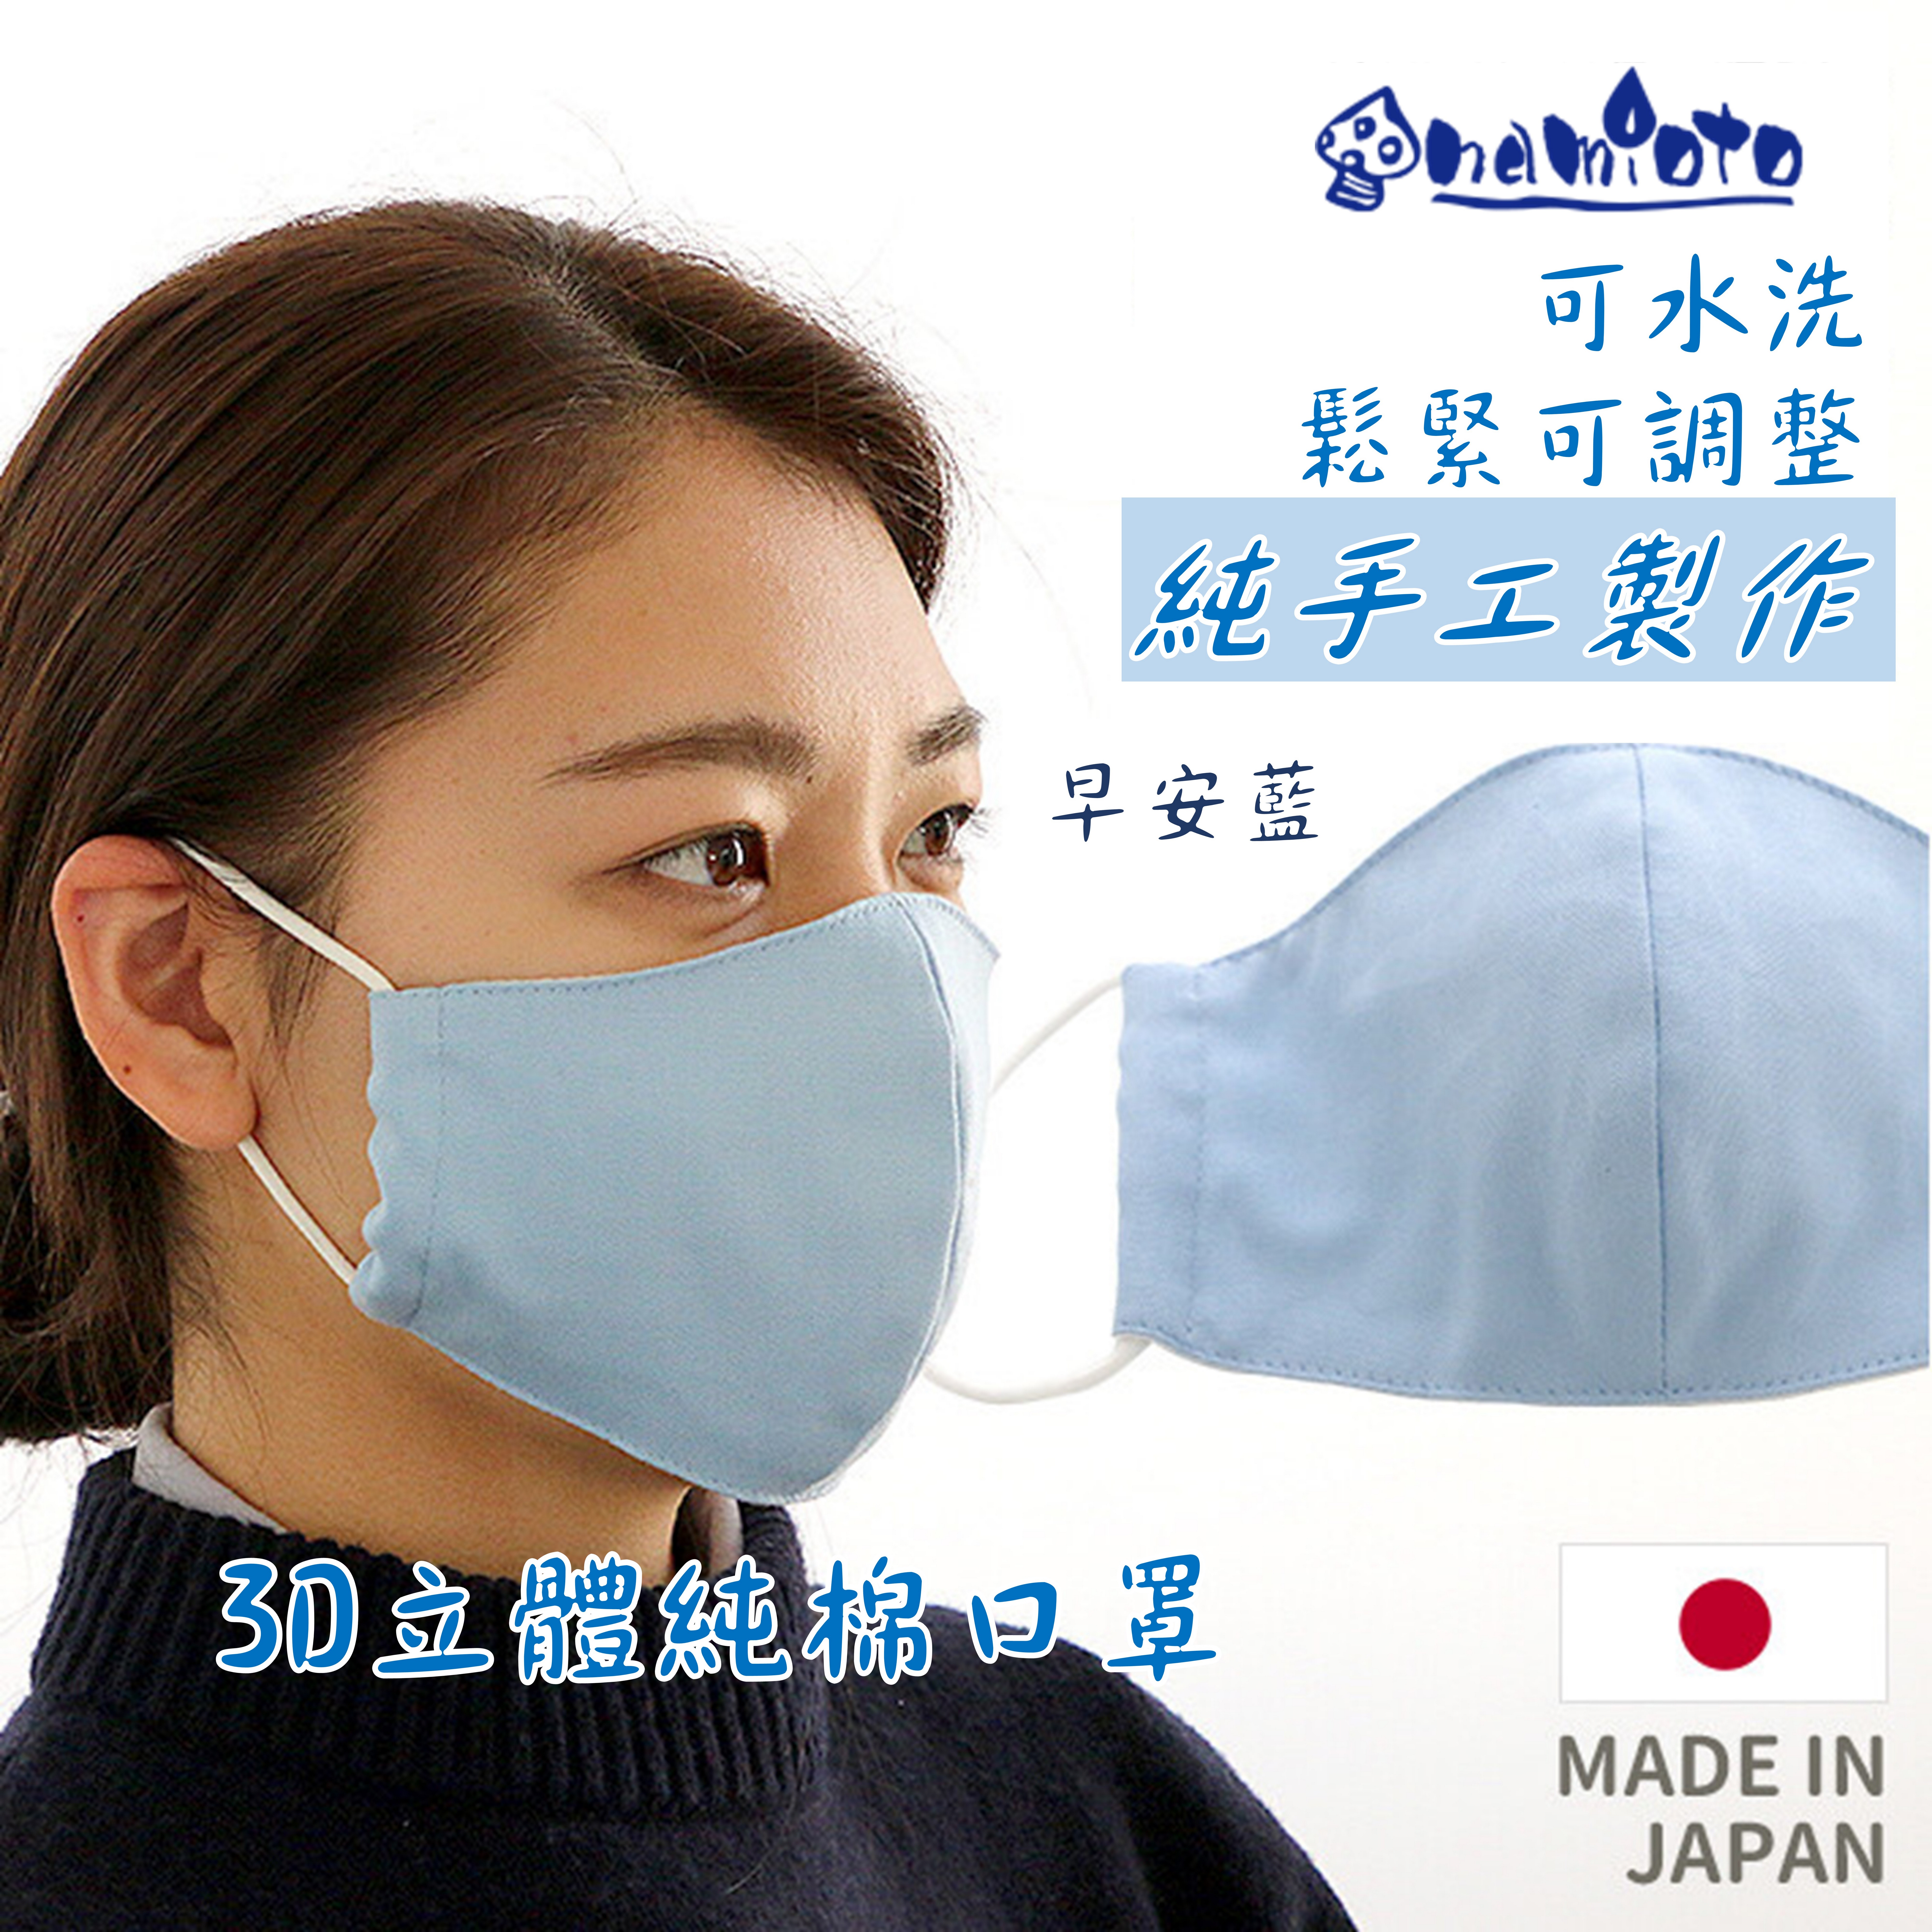 日本 namioto 純手工純棉雙層口罩 3D 立體口罩 早安藍色 防曬吸汗高透氣 口罩